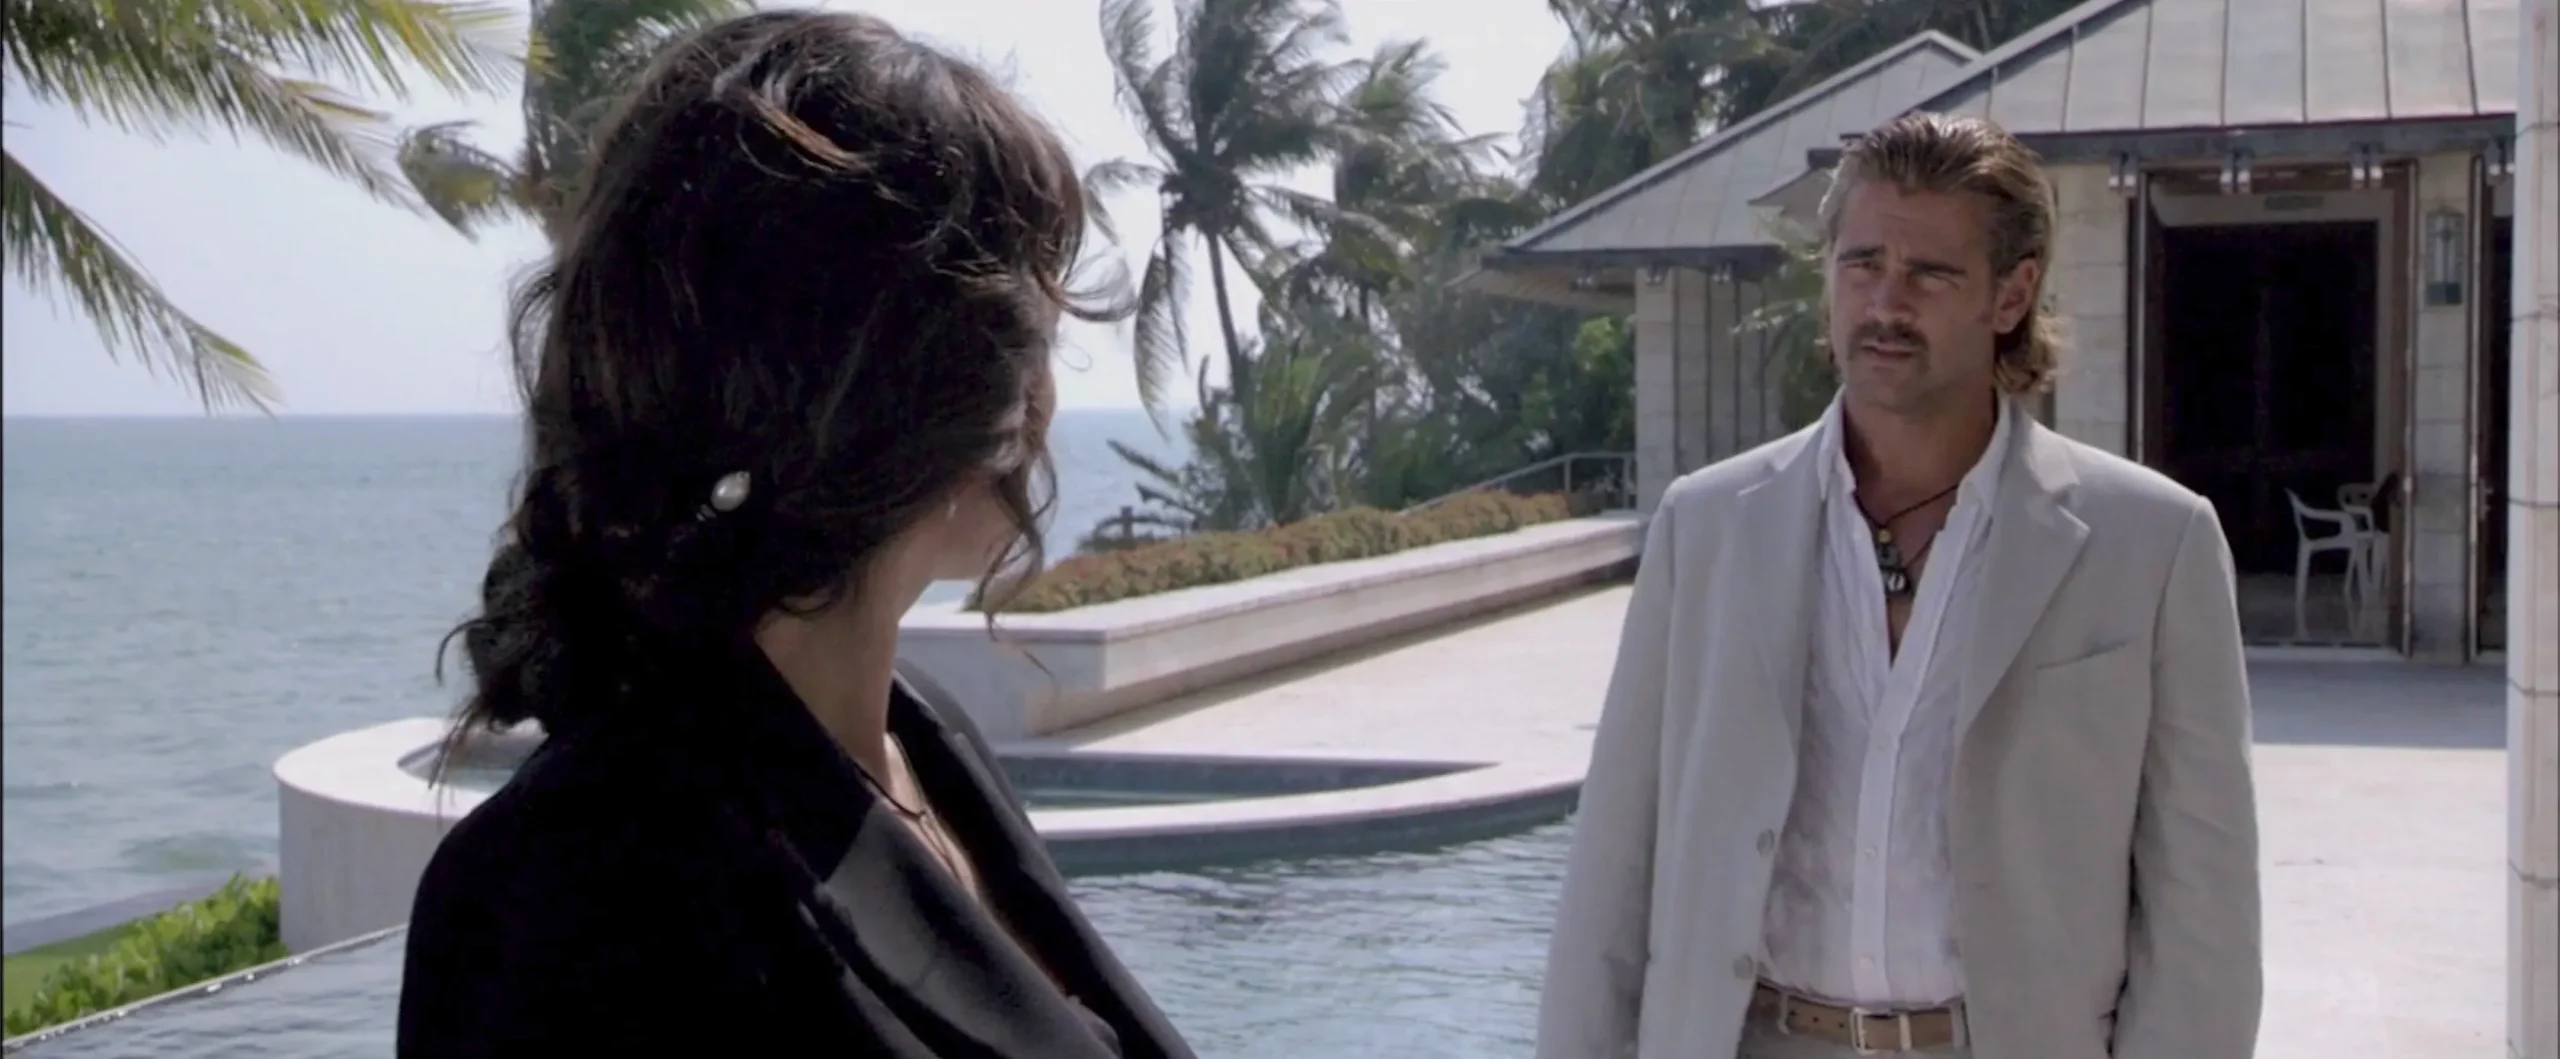 Miami Vice, film diretto da Michael Mann nel 2006